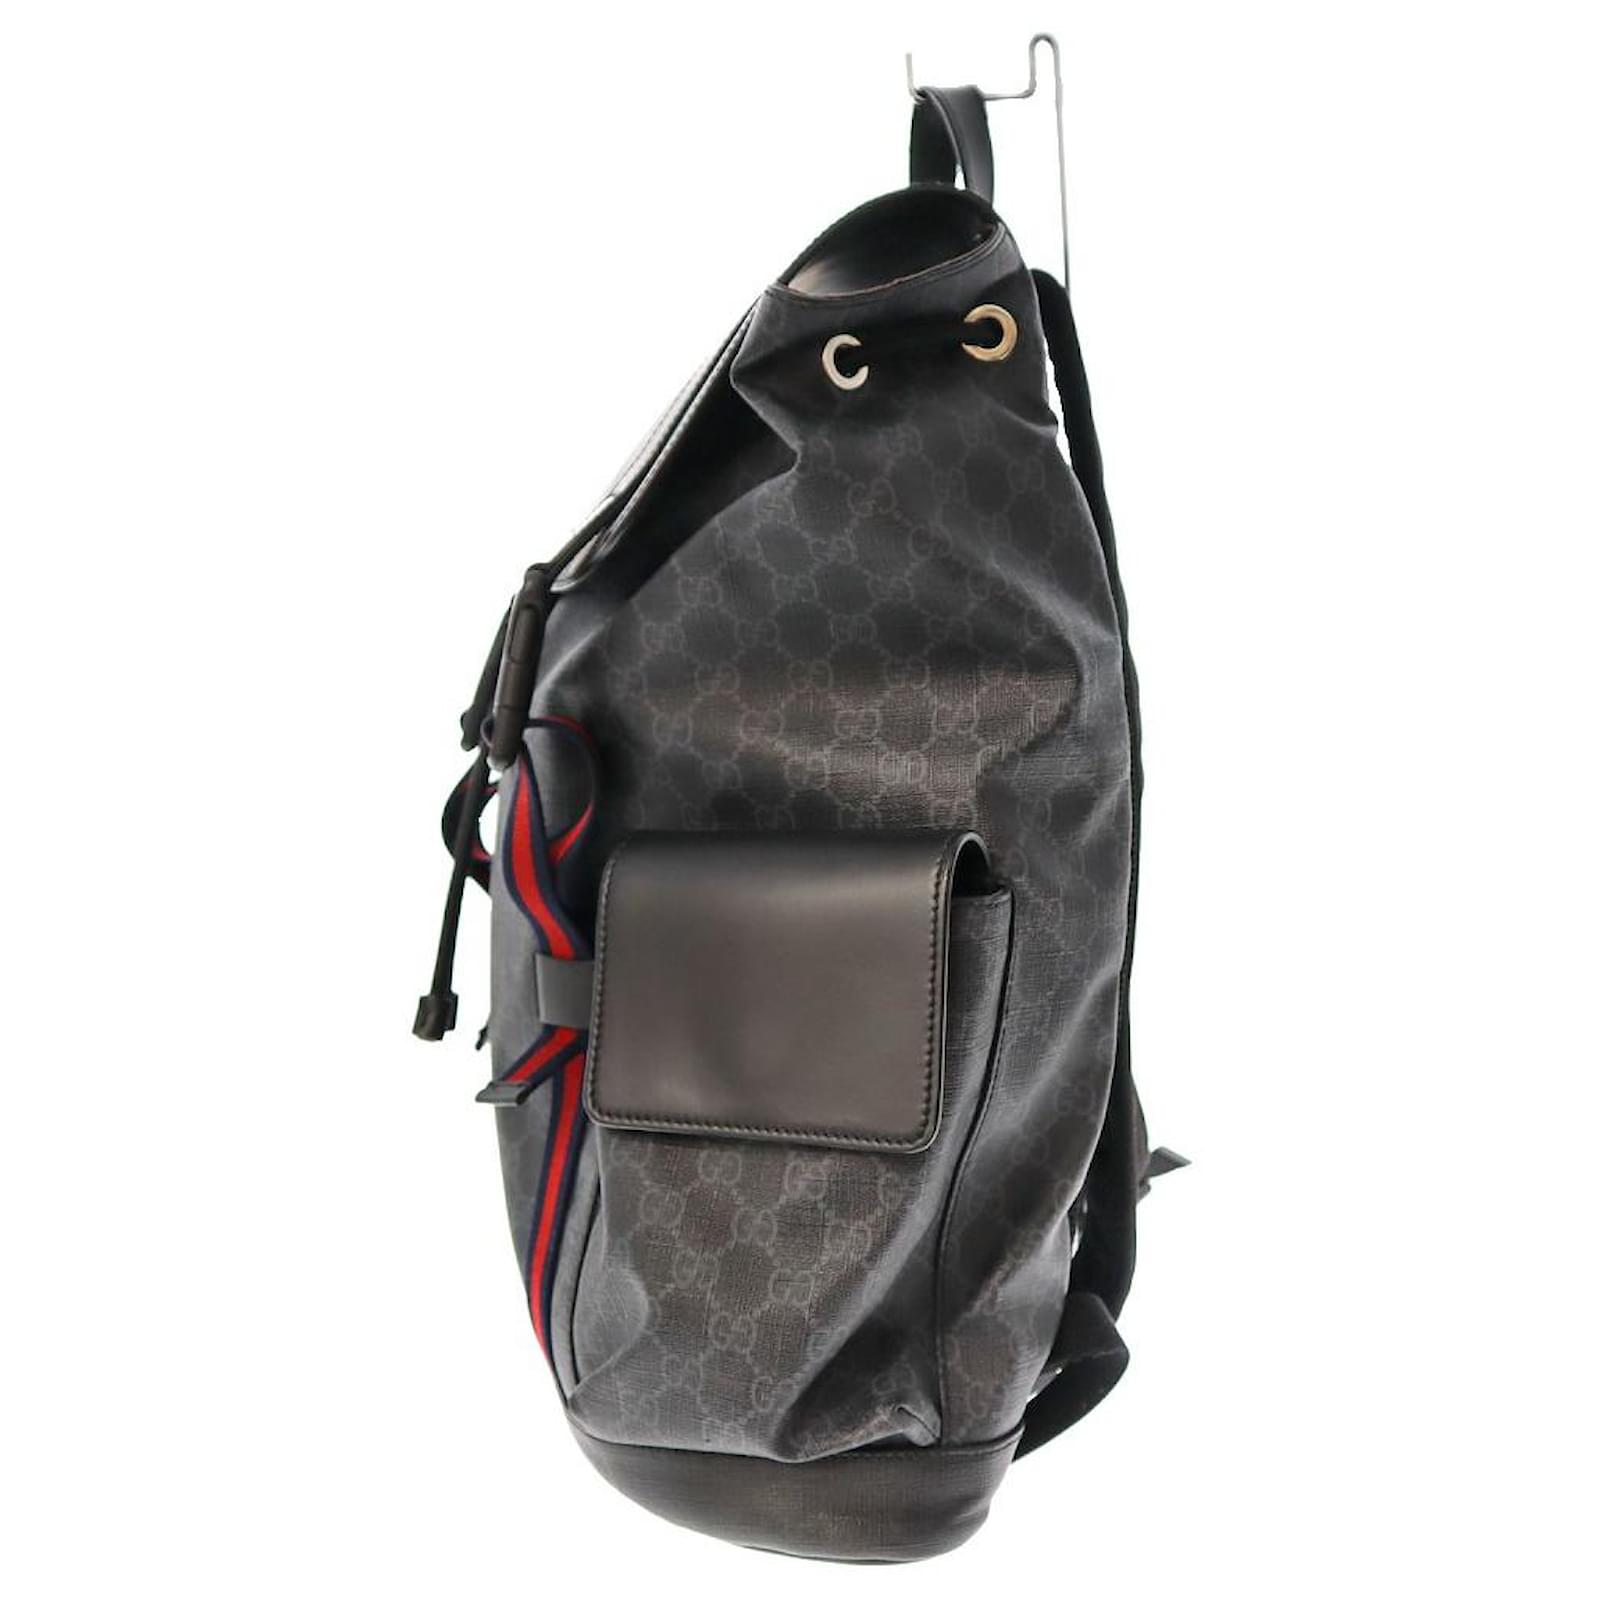 Repurposed Gucci Backpack